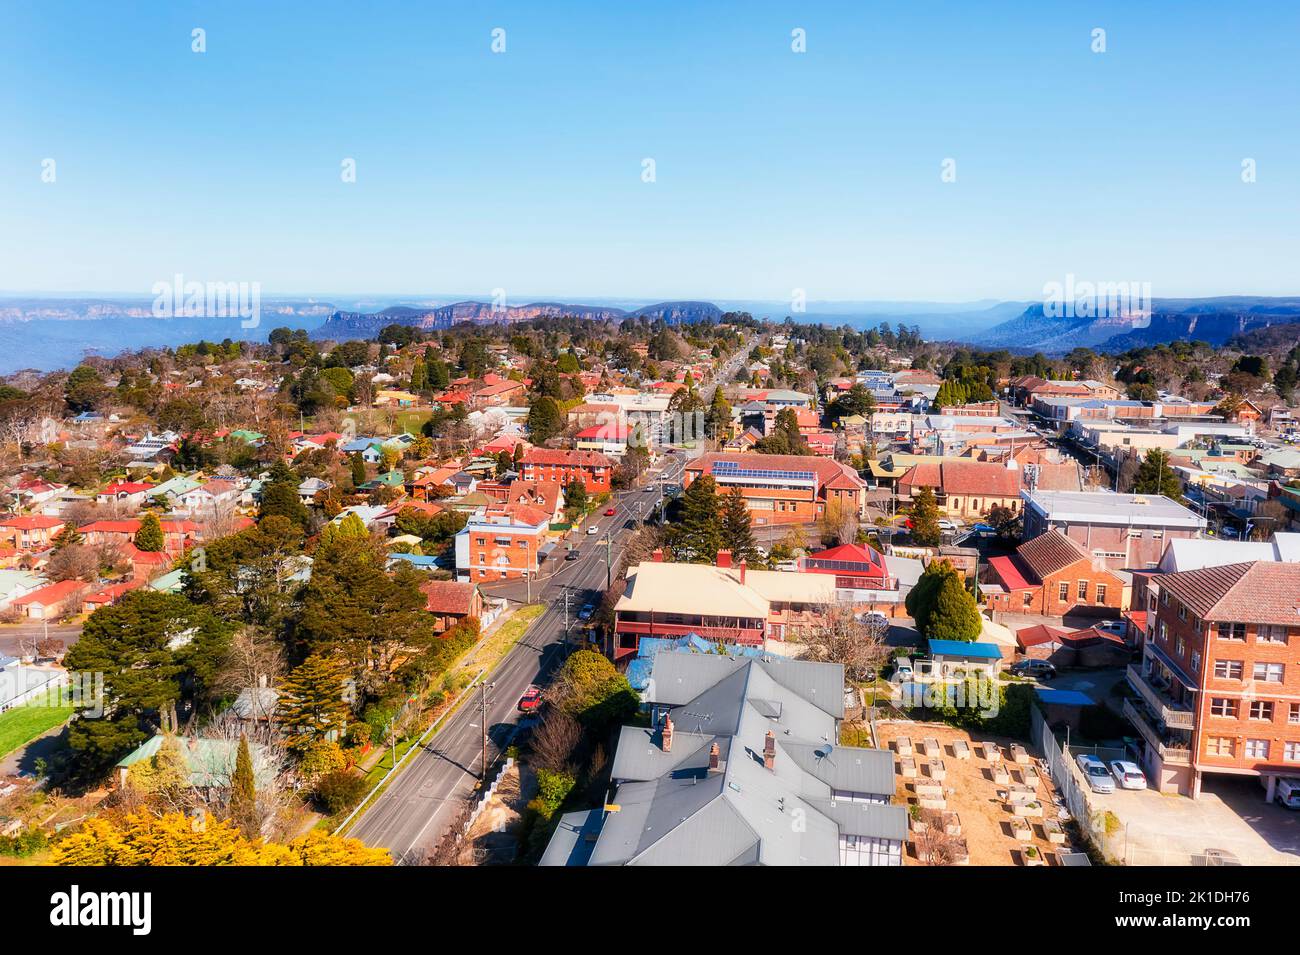 Vista aérea del paisaje urbano sobre la ciudad regional de Katoomba en las Montañas Azules de Australia - calles y casas en el gran cañón Echo Point. Foto de stock